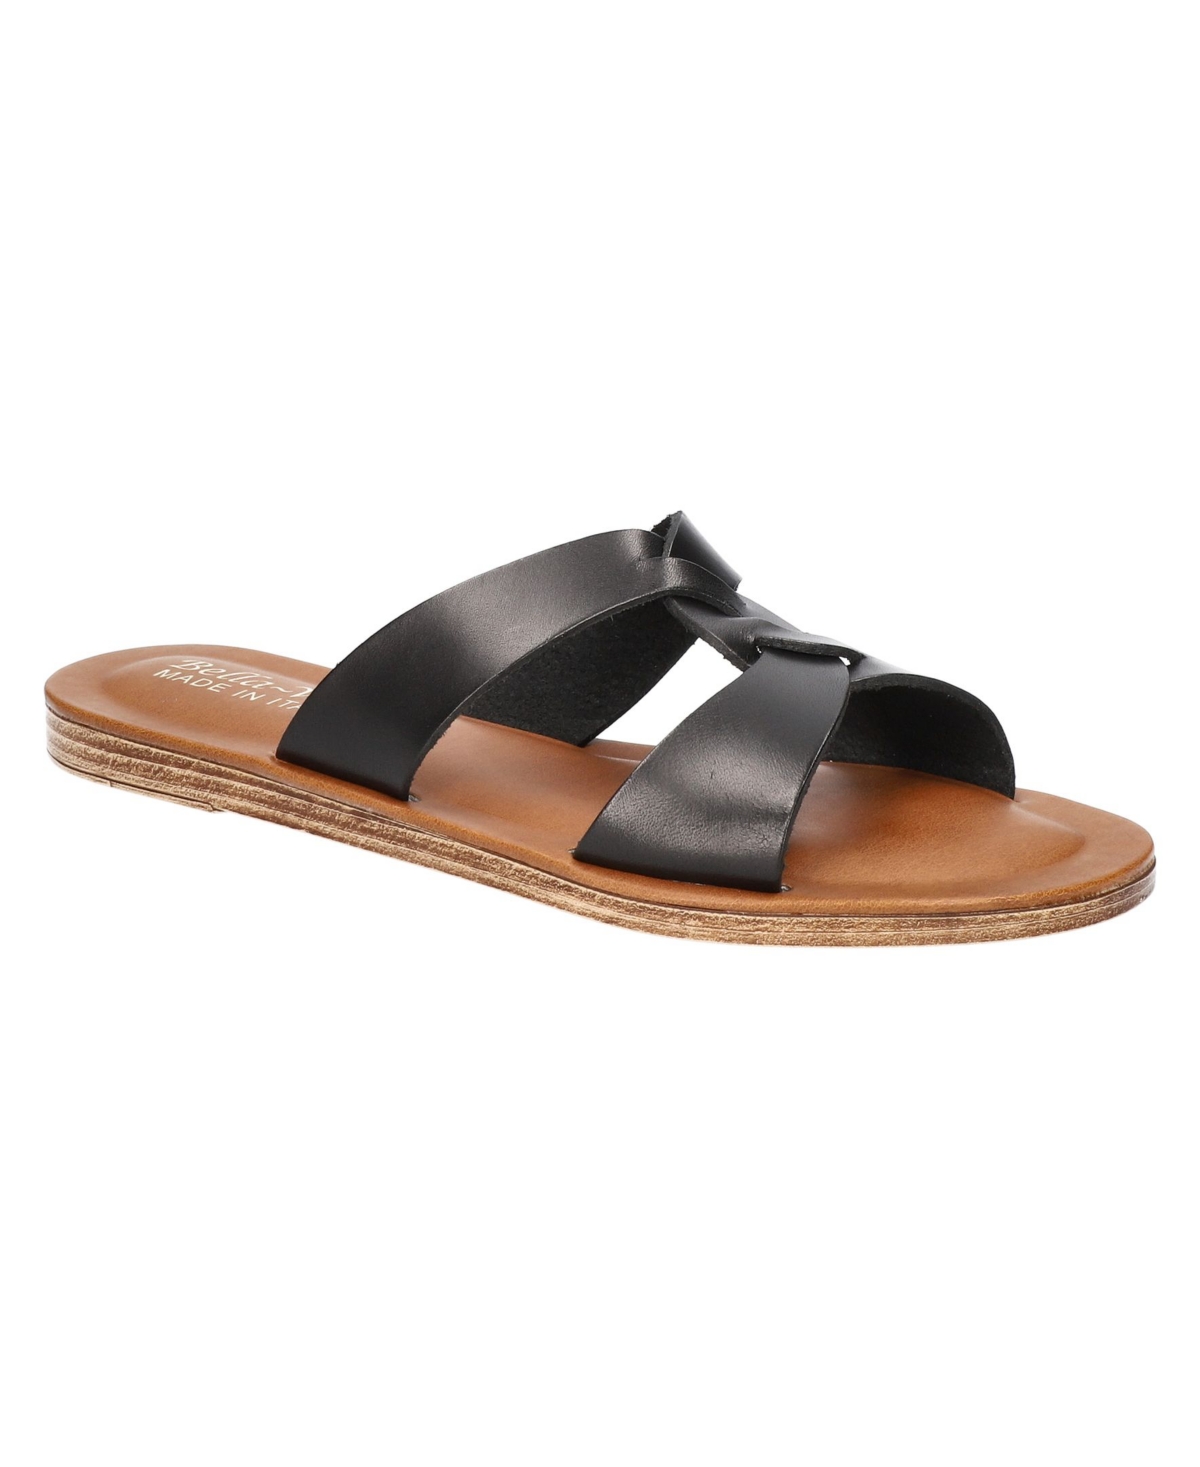 Women's Dov-Italy Slide Sandals - Whiskey Leather